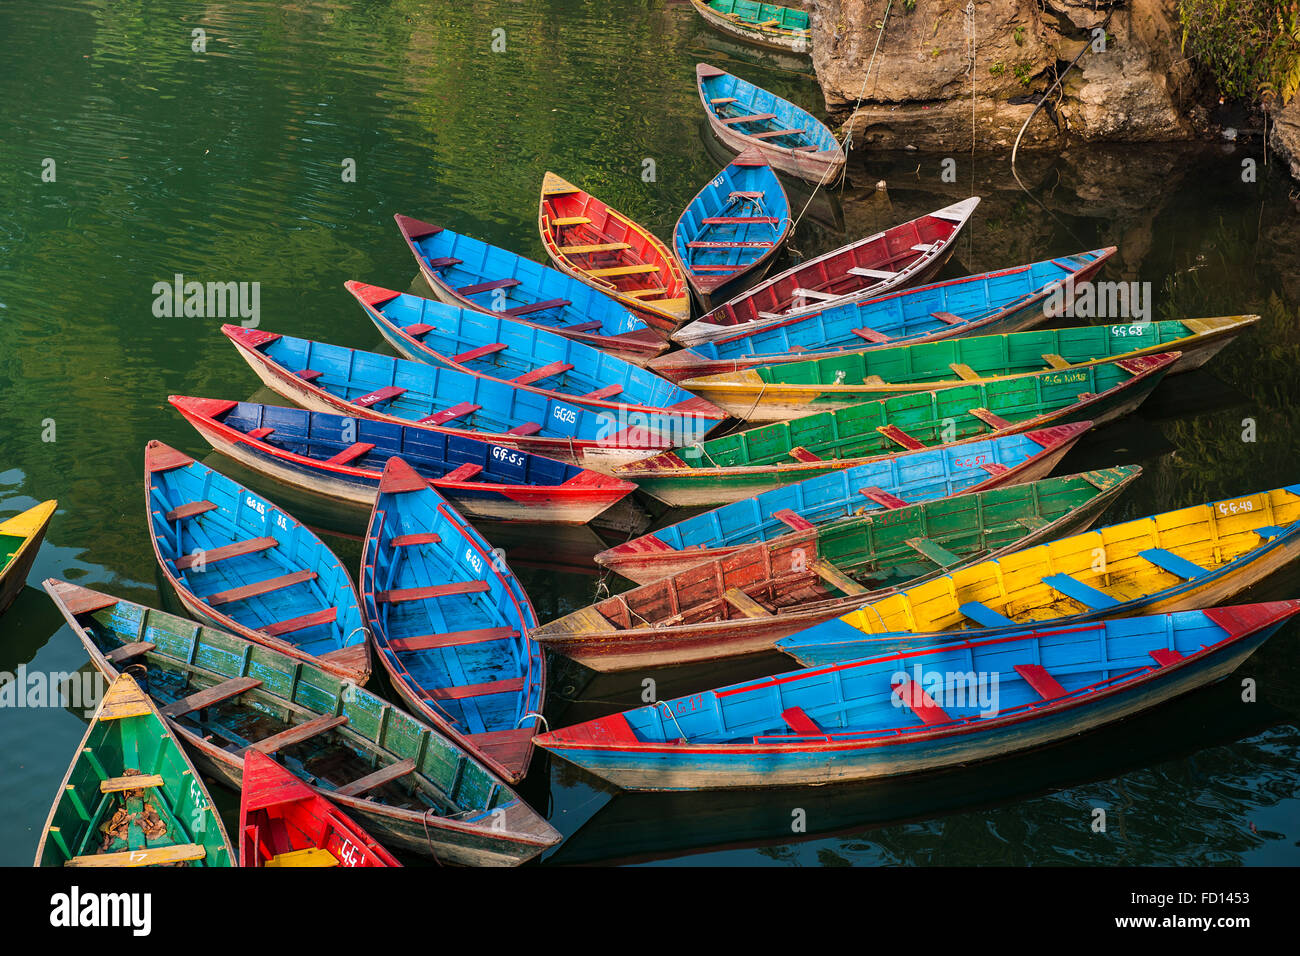 Nepal, Pokhara, local lake, boats Stock Photo